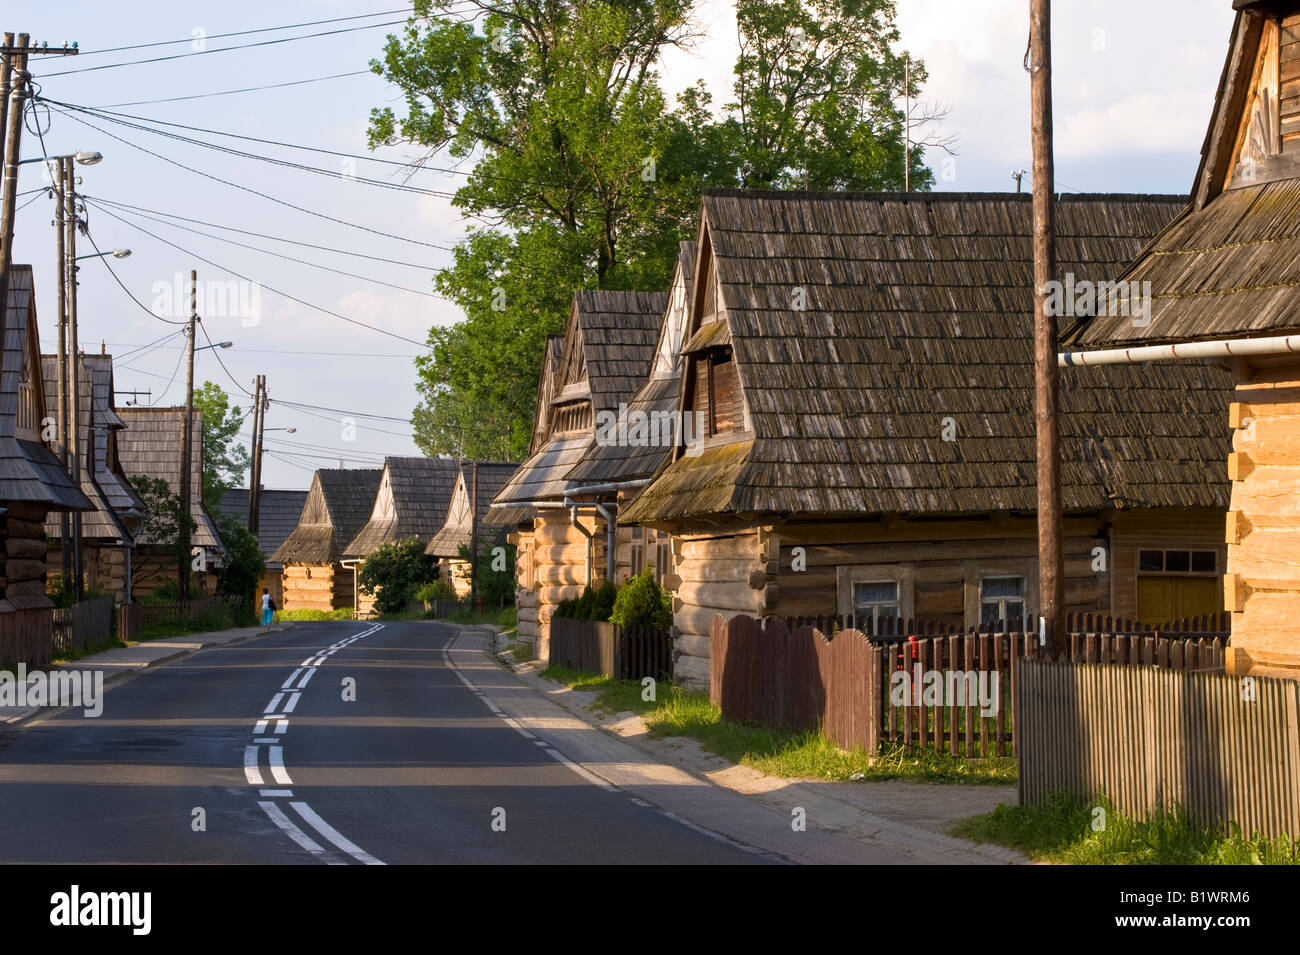 Une architecture traditionnelle en bois de Chocholow, village de la région de Podhale, Pologne Banque D'Images